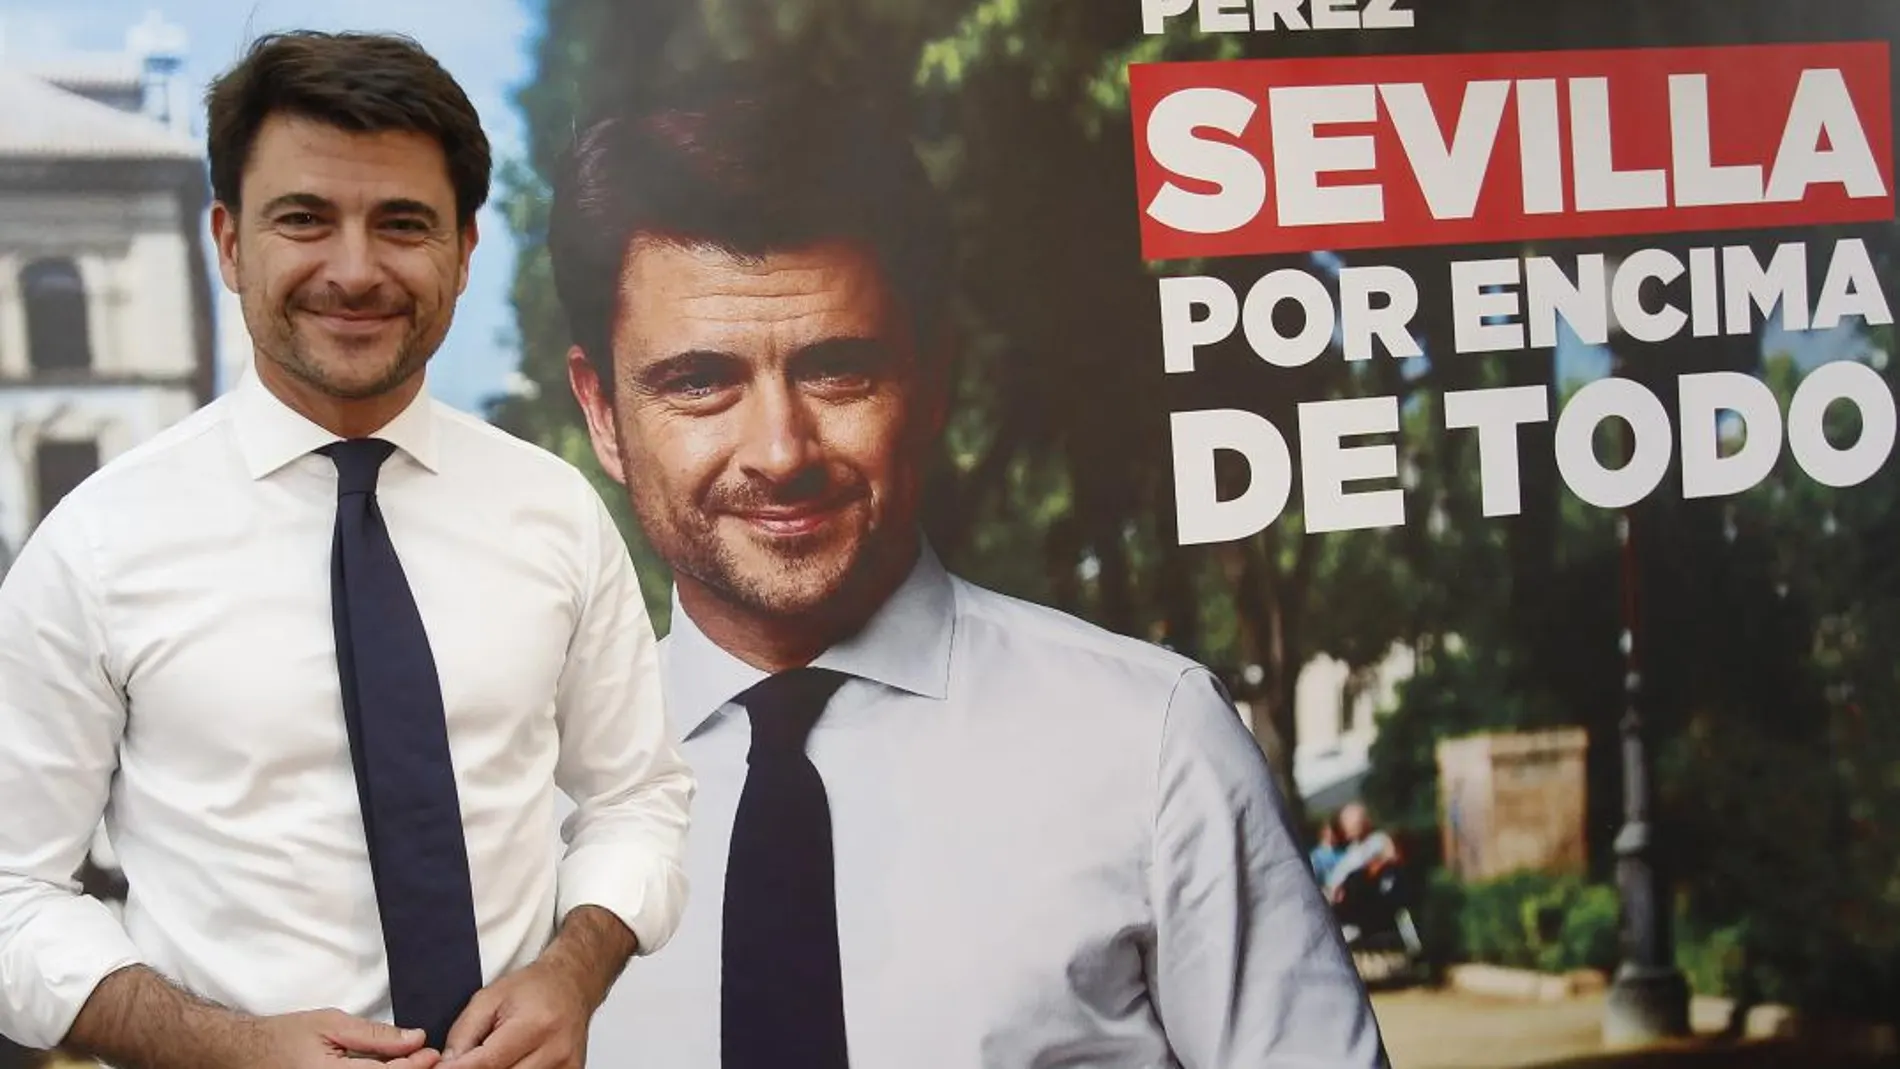 Beltrán Pérez posa con una imagen del folleto de campaña con el eslogan